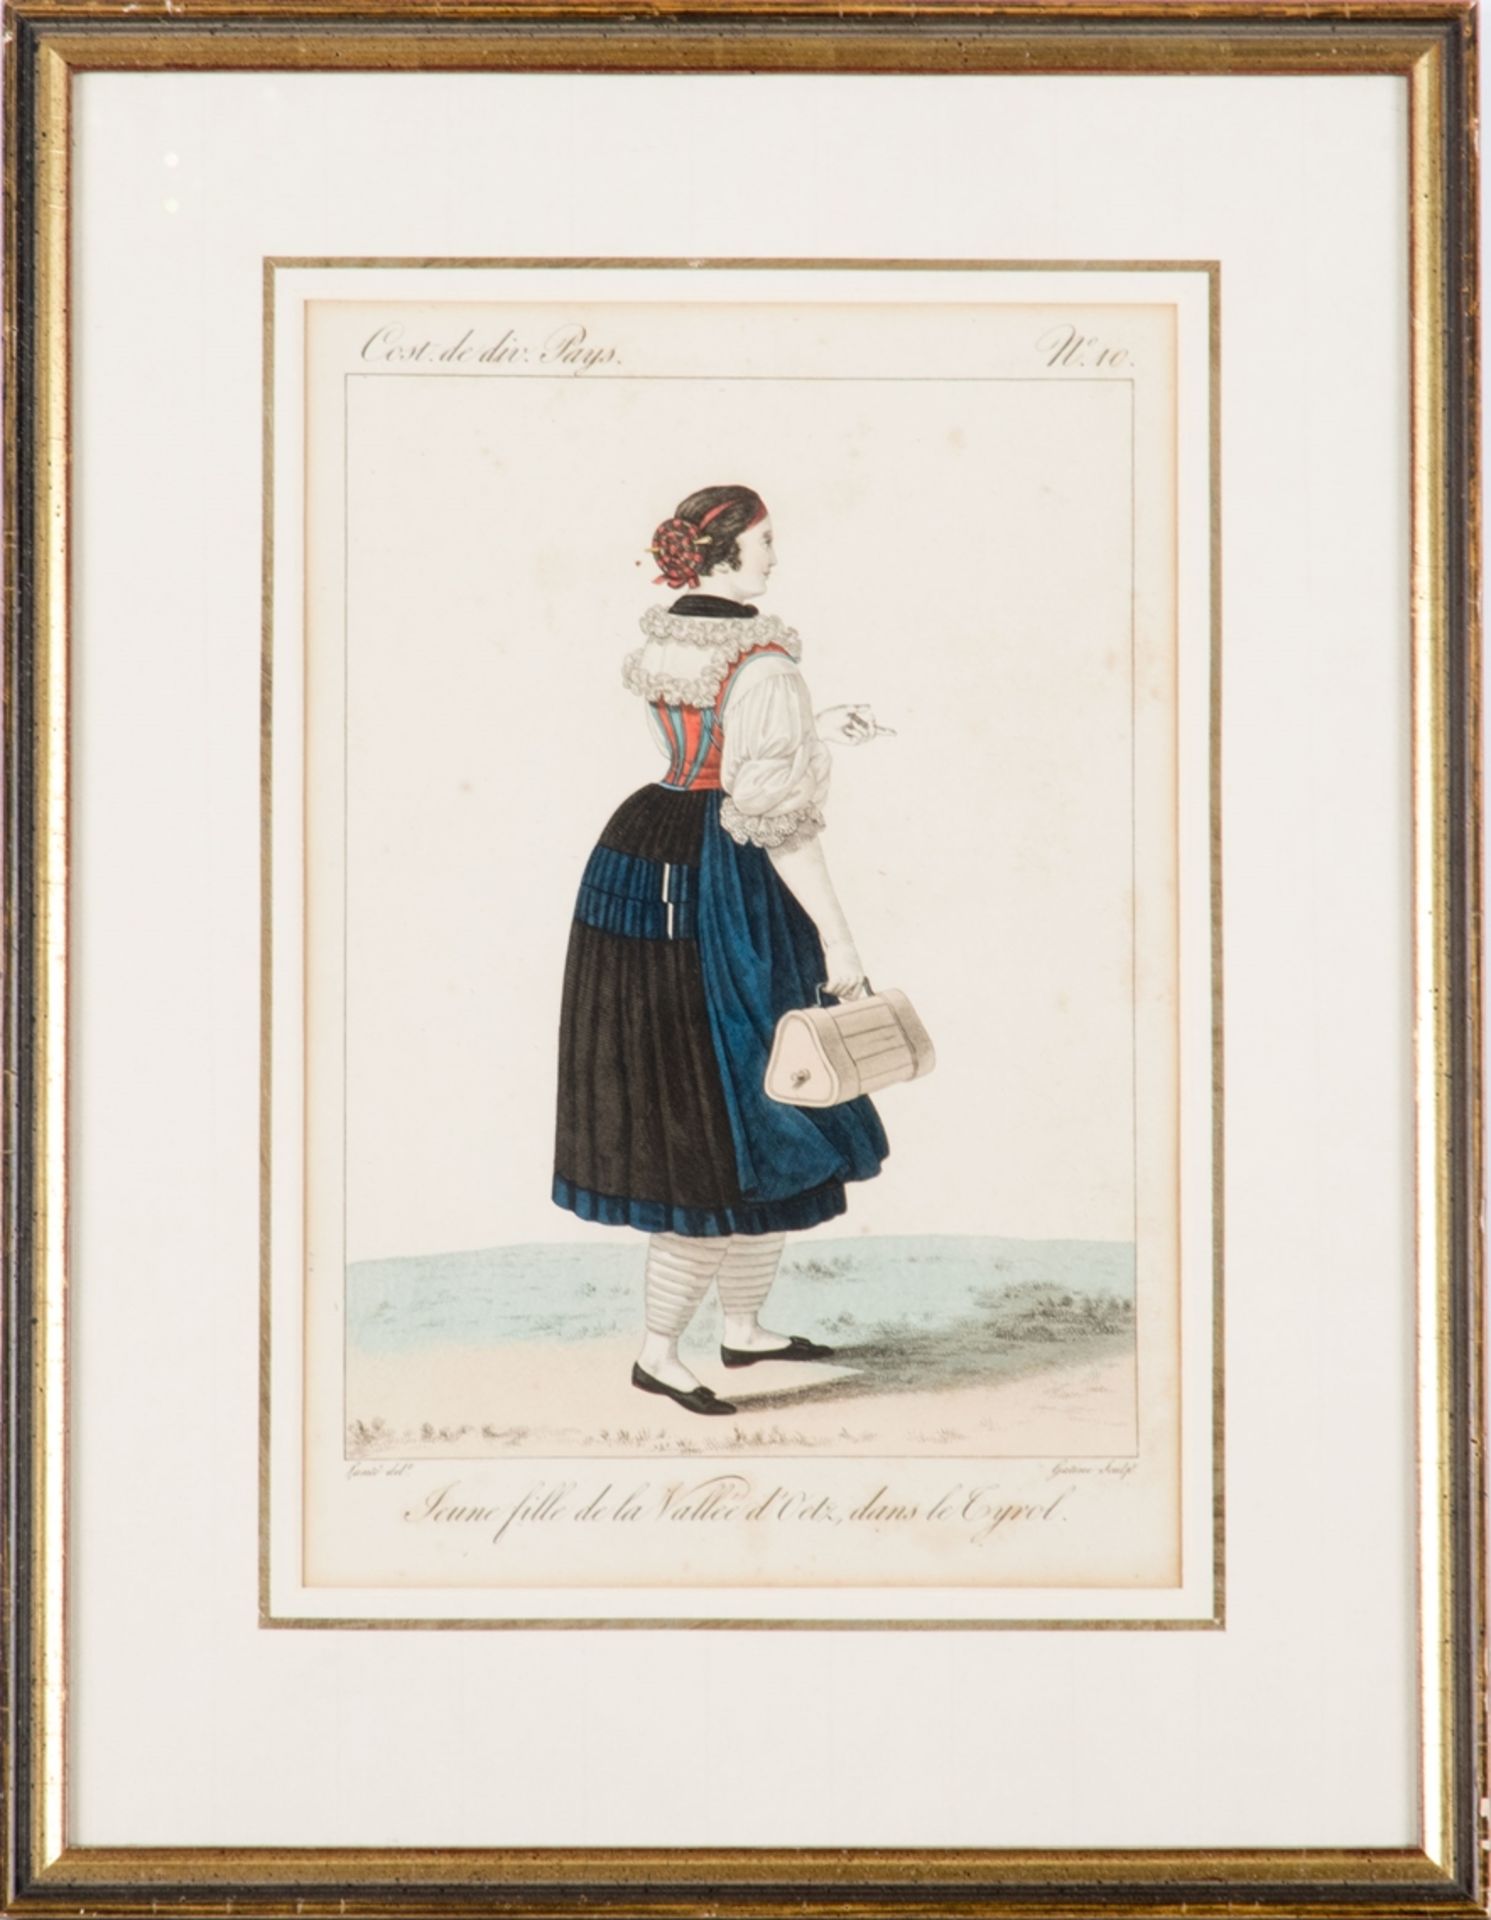 Gatine, Jaques, geb. 1773Kupferstich handcoloriert, Tracht Ötztal/Tirol.28 x 19 cm, unter Glas